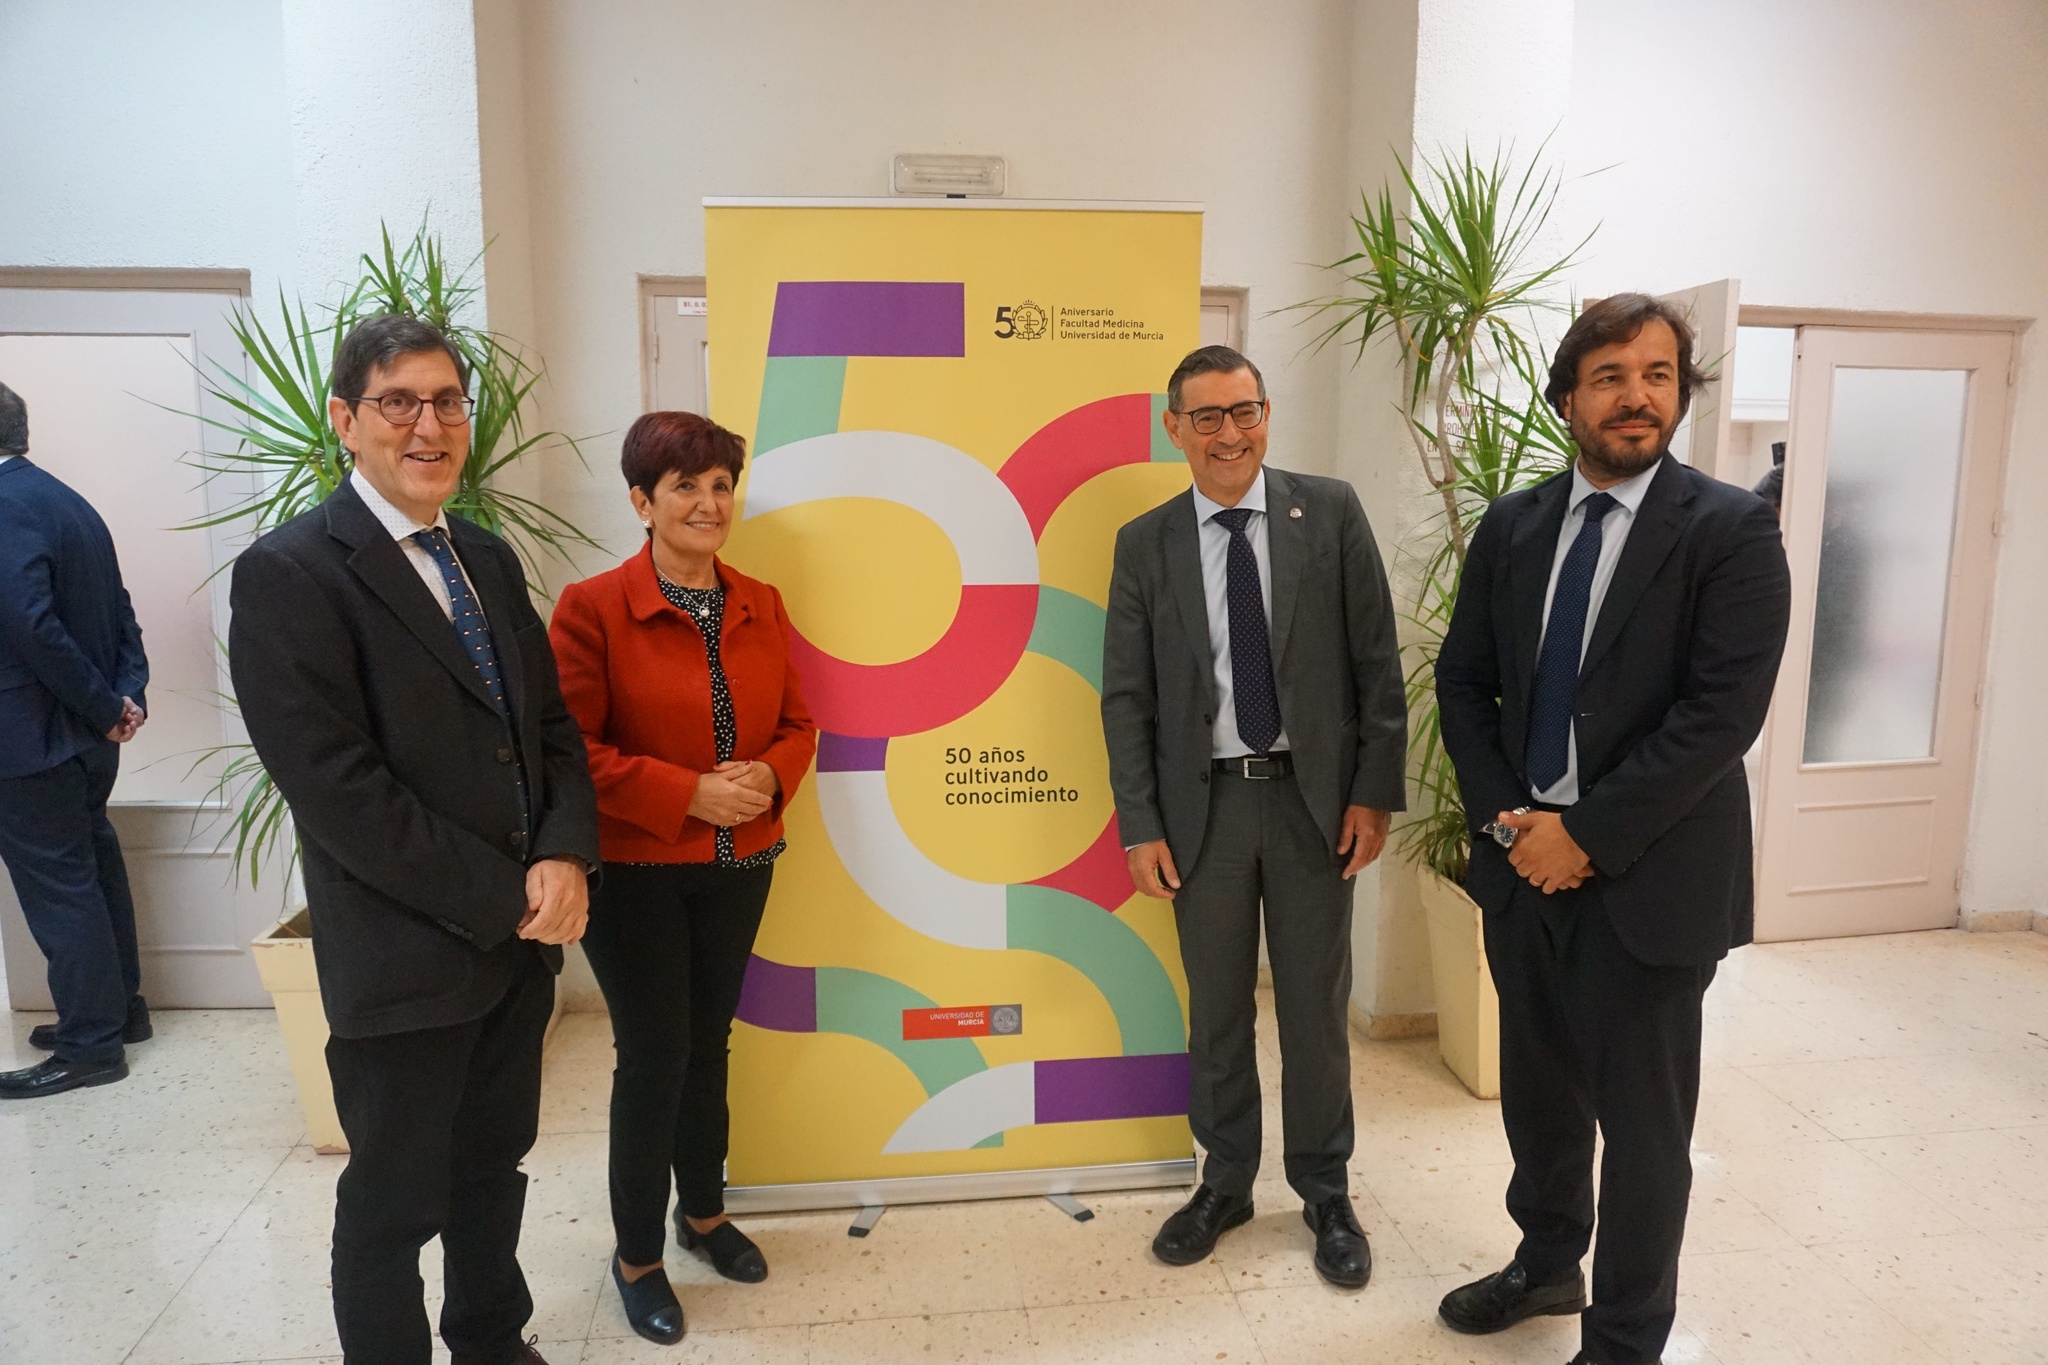 50 Aniversario de la Facultad de Medicina de la Universidad de Murcia